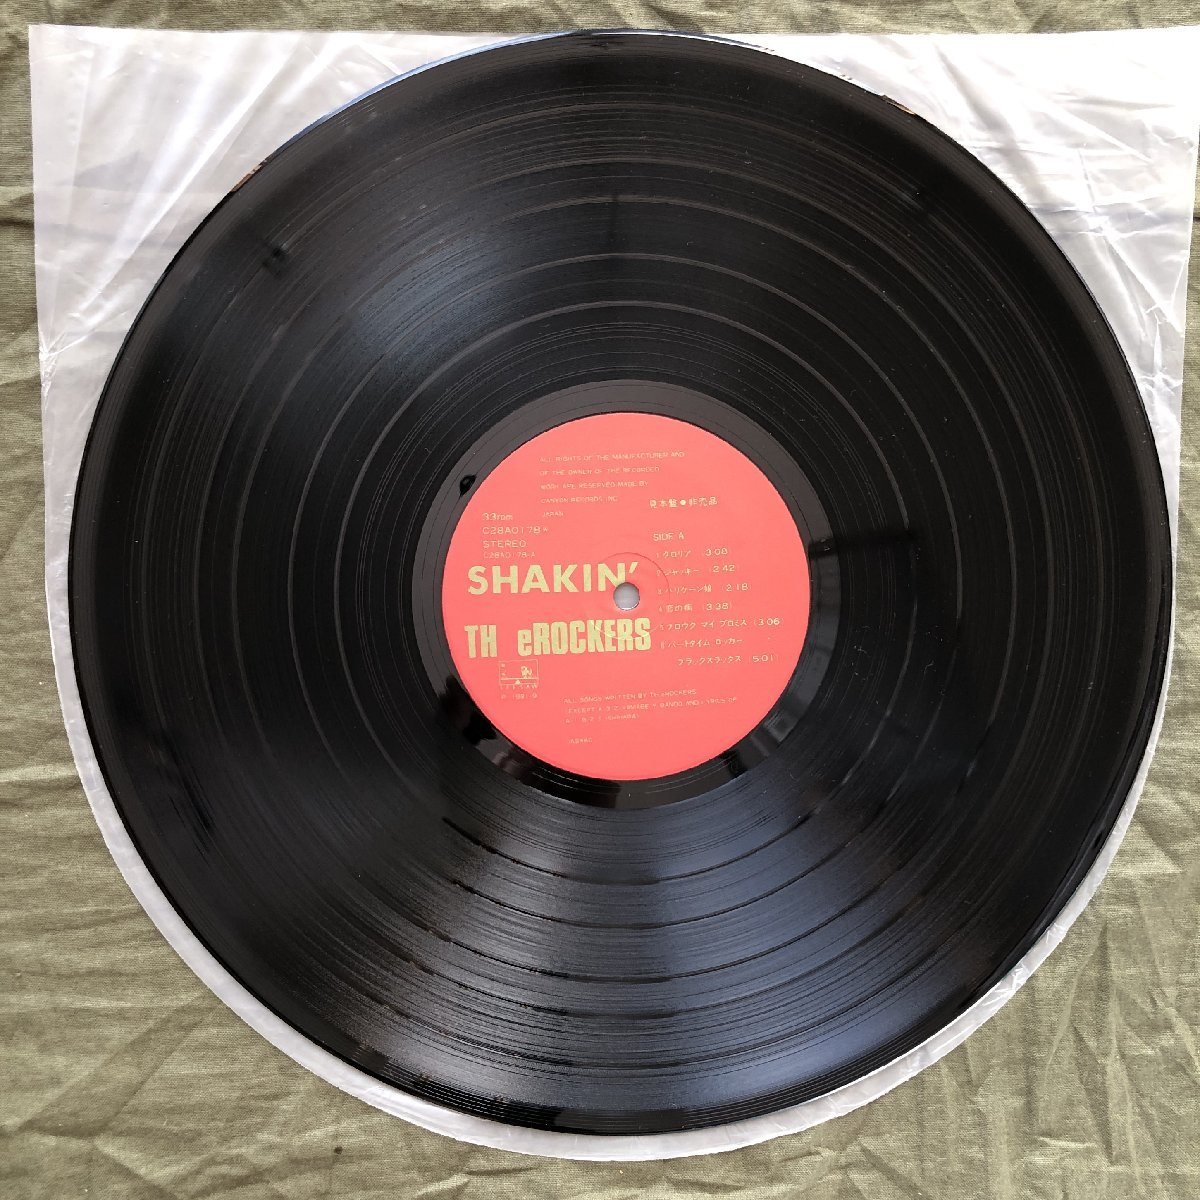 傷なし美盤 美ジャケ 1981年 オリジナル盤 ザ・ロッカーズ TH eROCKERS LPレコード シェイキン Shakin' 帯付 J-Rock 陣内孝則 マト両1A1の画像8